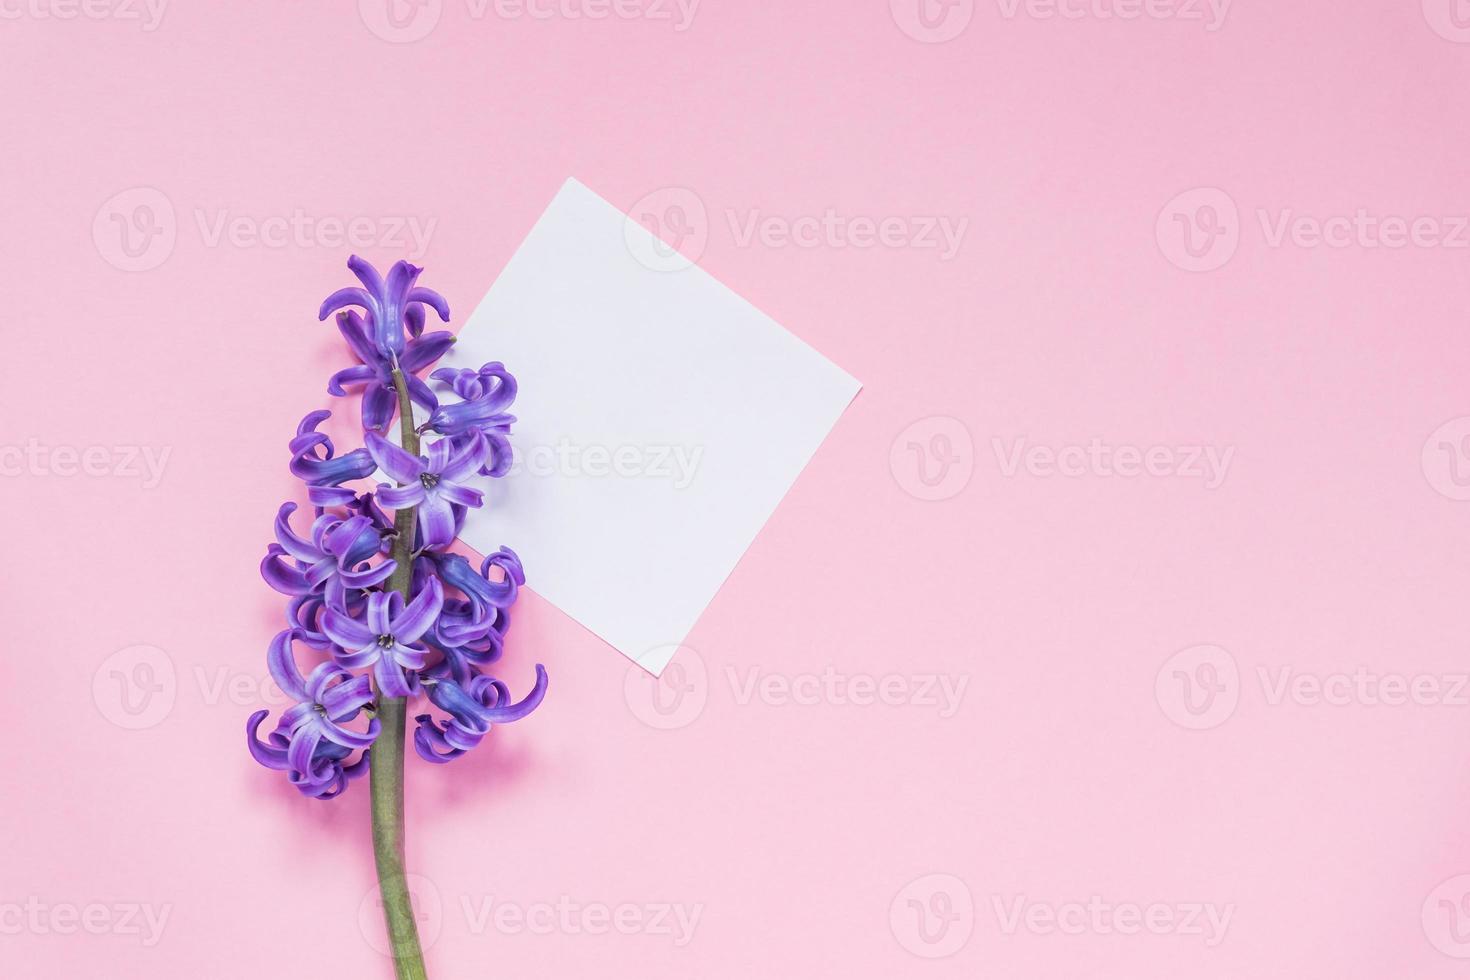 model. epty papieren label met lila hiacint op pastelroze achtergrondkleur. bovenaanzicht, plat gelegd met kopieerruimte foto